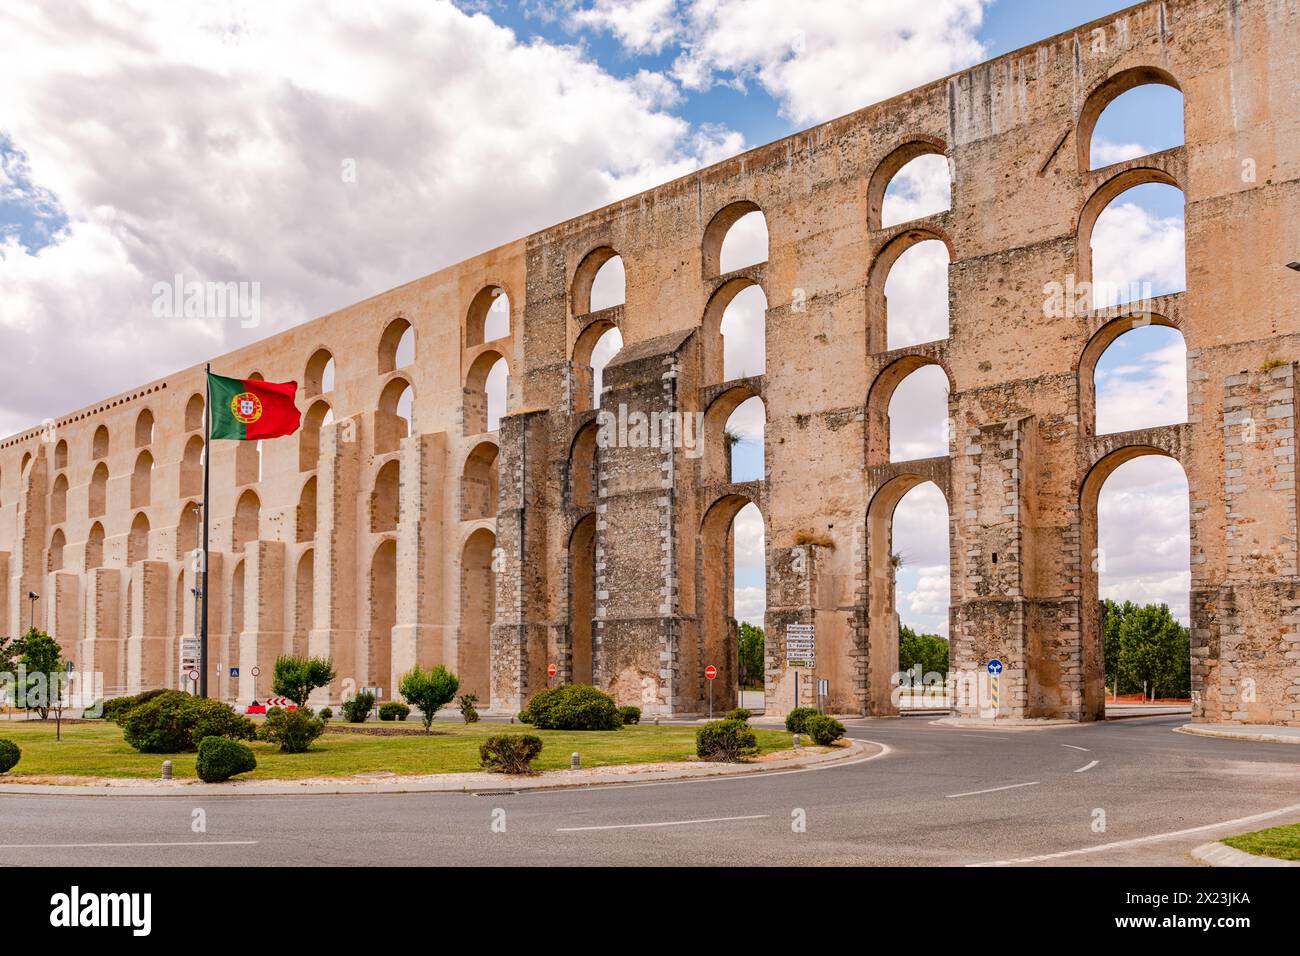 The multi-arch aqueduct Aqueduto da Amoreira is the symbol of Elvas, Portugal Stock Photo